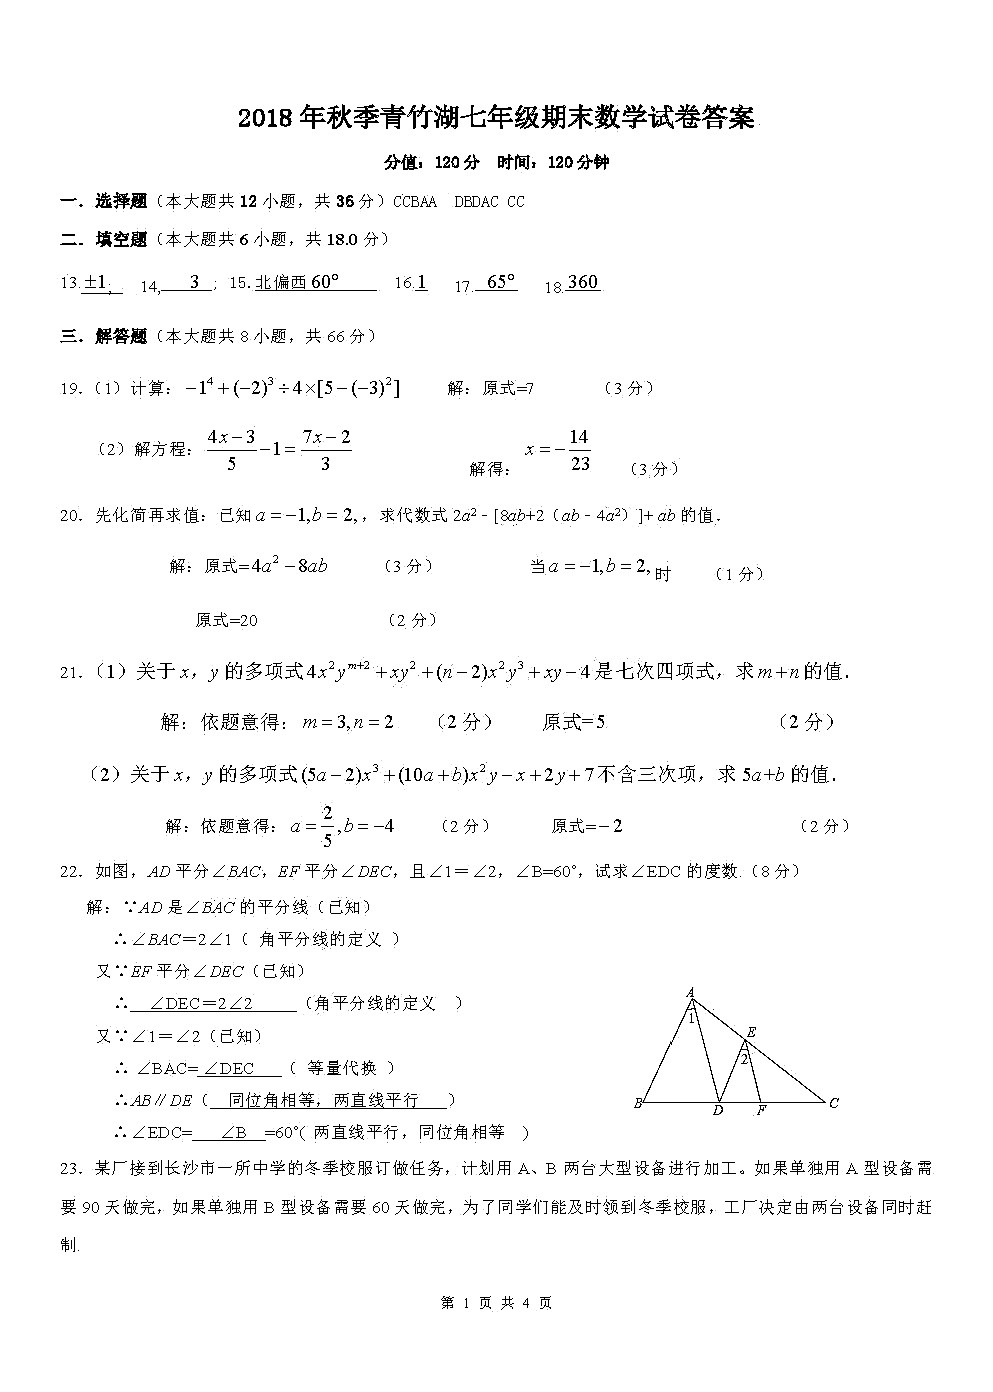 2019年1月长沙青竹湖湘一七年级期末数学试卷答案